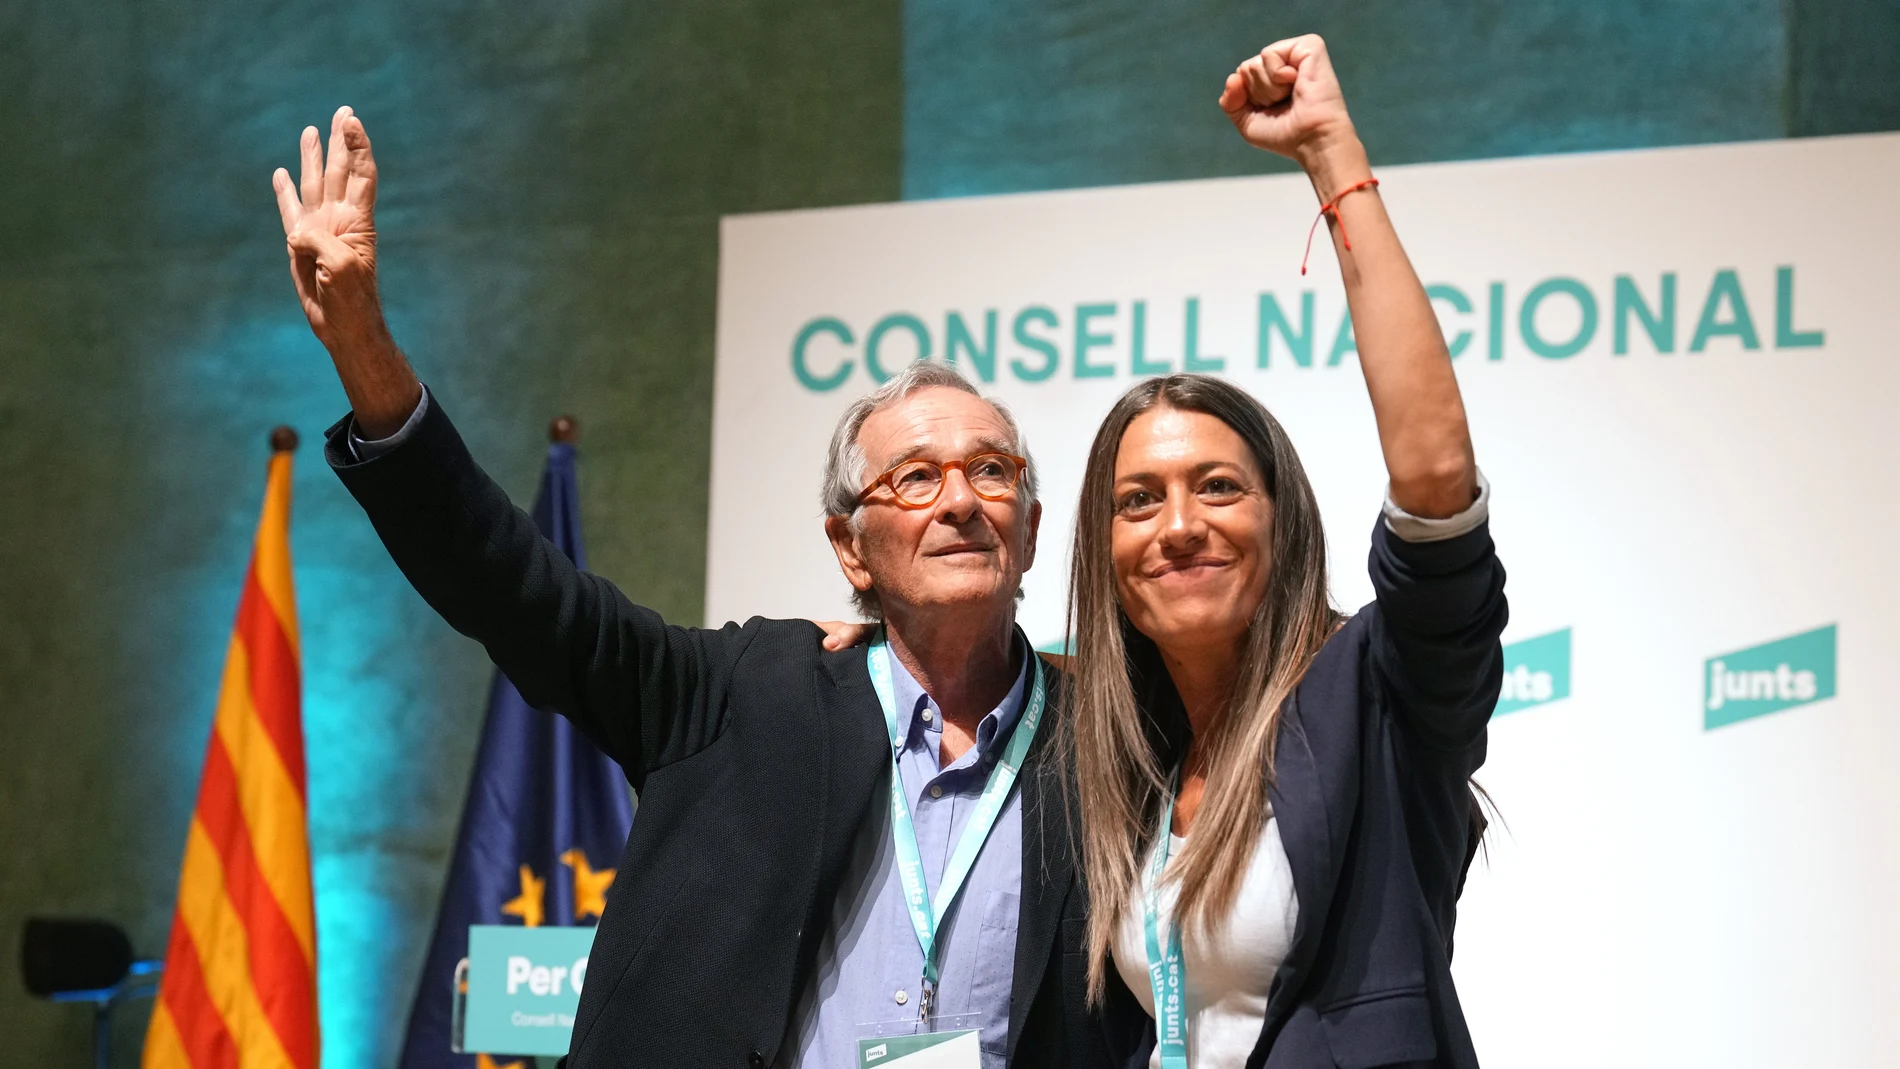 El candidato a la alcaldía de Barcelona, Xavier Trias (c), y la cabeza de lista al Congreso, Miriam Nogueras, durante el Consell Nacional de su partido.